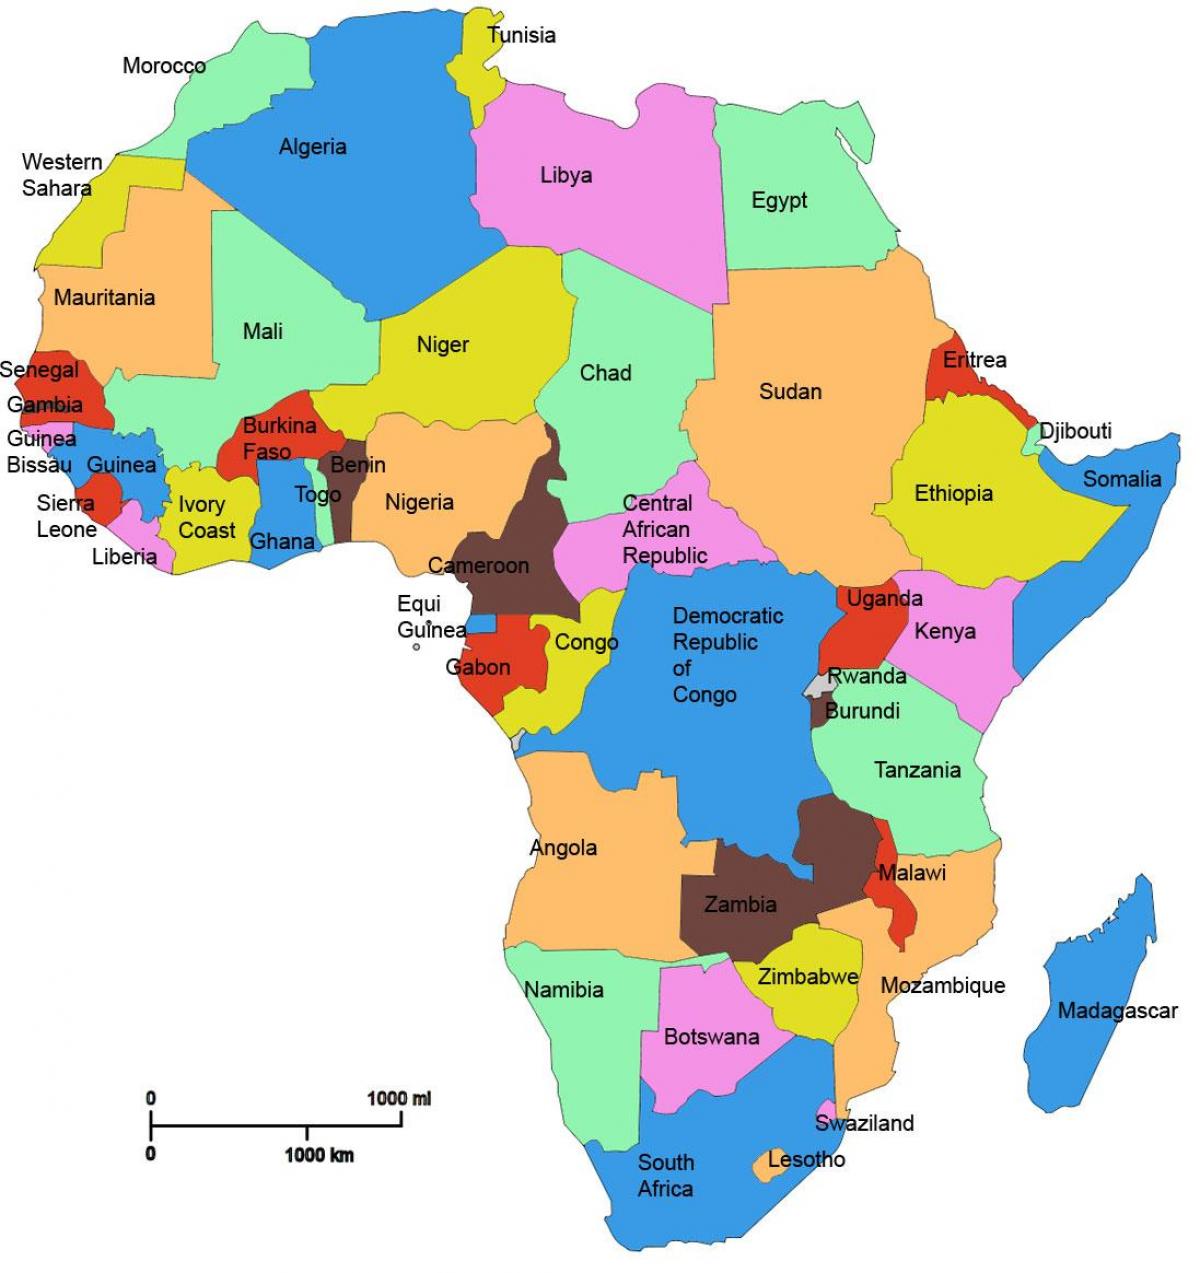 非洲的地图显示出坦桑尼亚